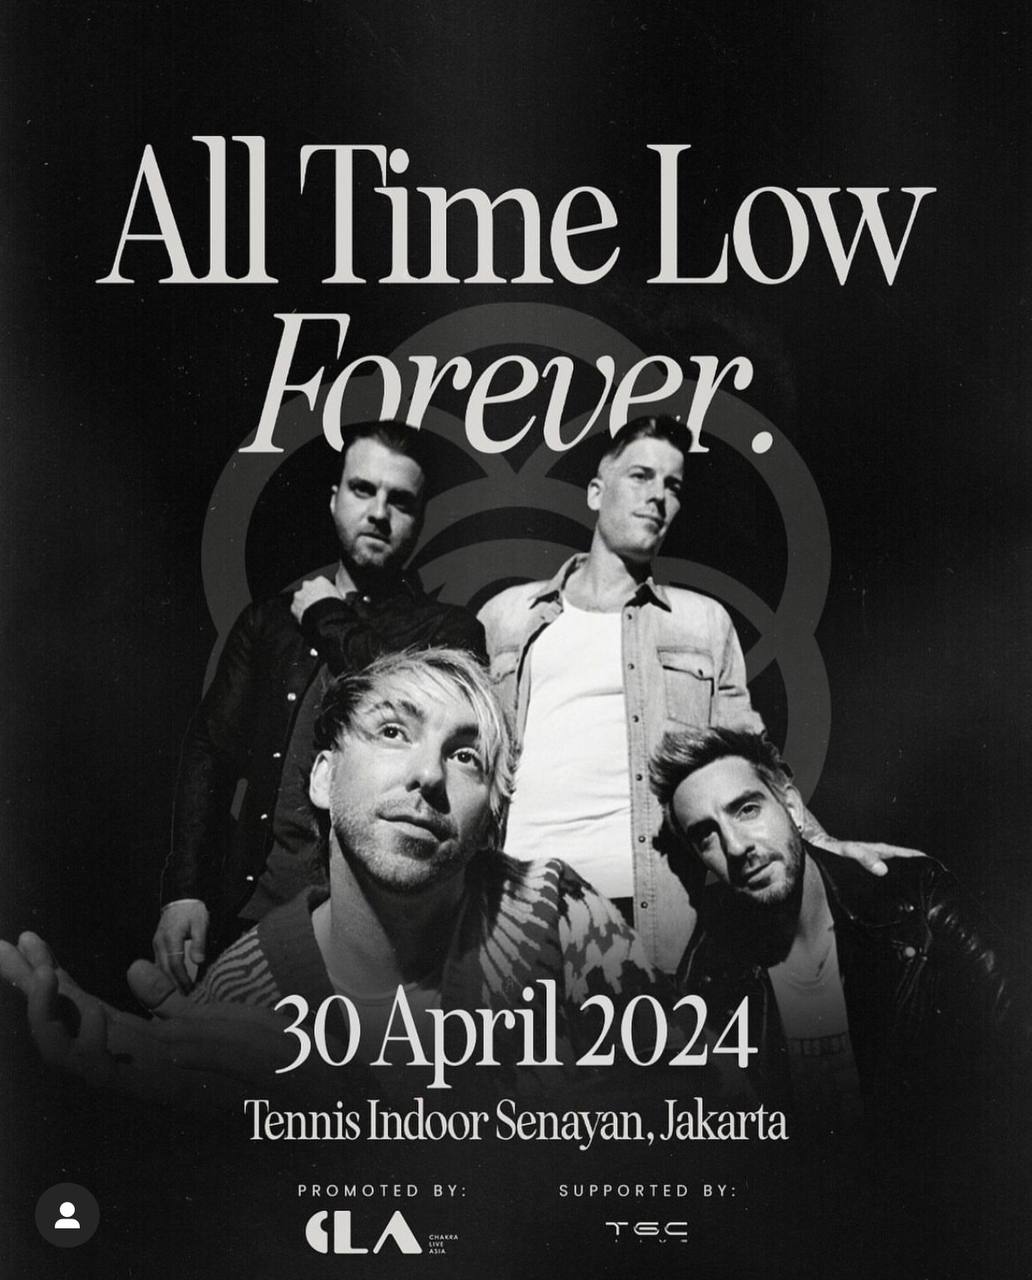 All Time Low Akan Konser di Tennis Indoor Senayan, Jakarta 30 April 2024